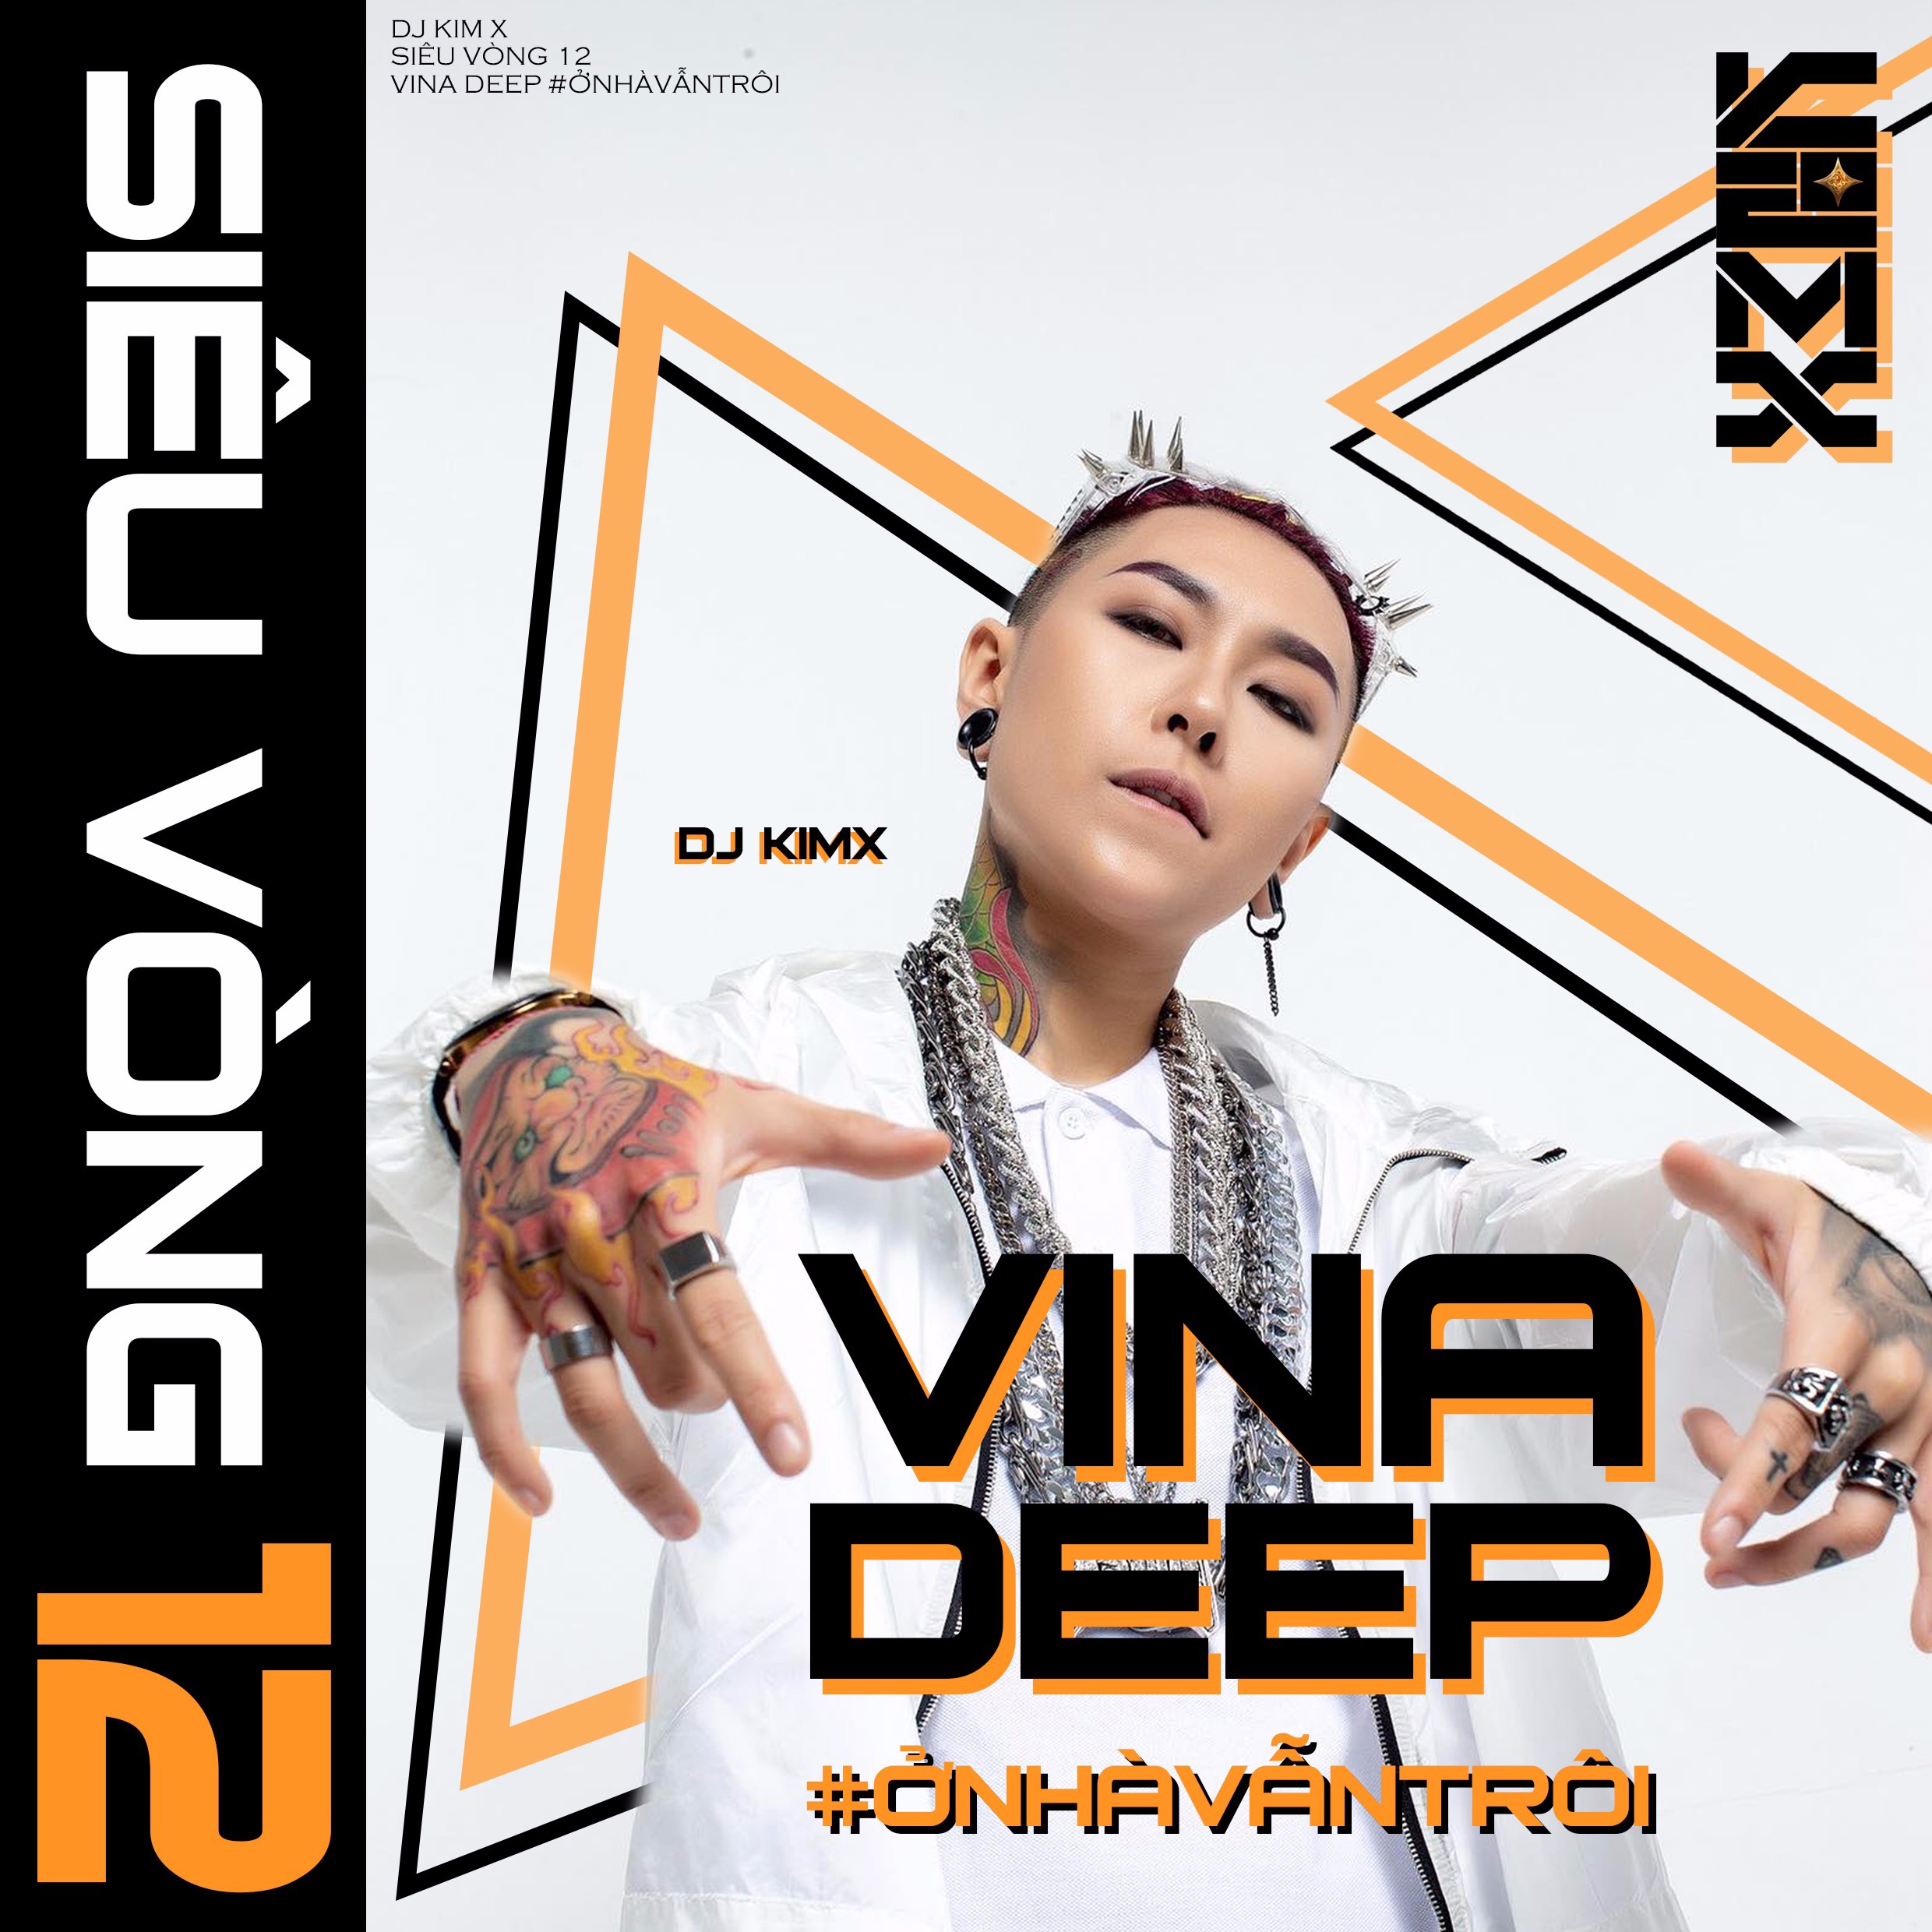 Pobierać #ỞNHÀVẪNTRÔI --- DJ KIMX --- MIXSET KIMX SIÊU VÒNG 12 --- VINADEEP